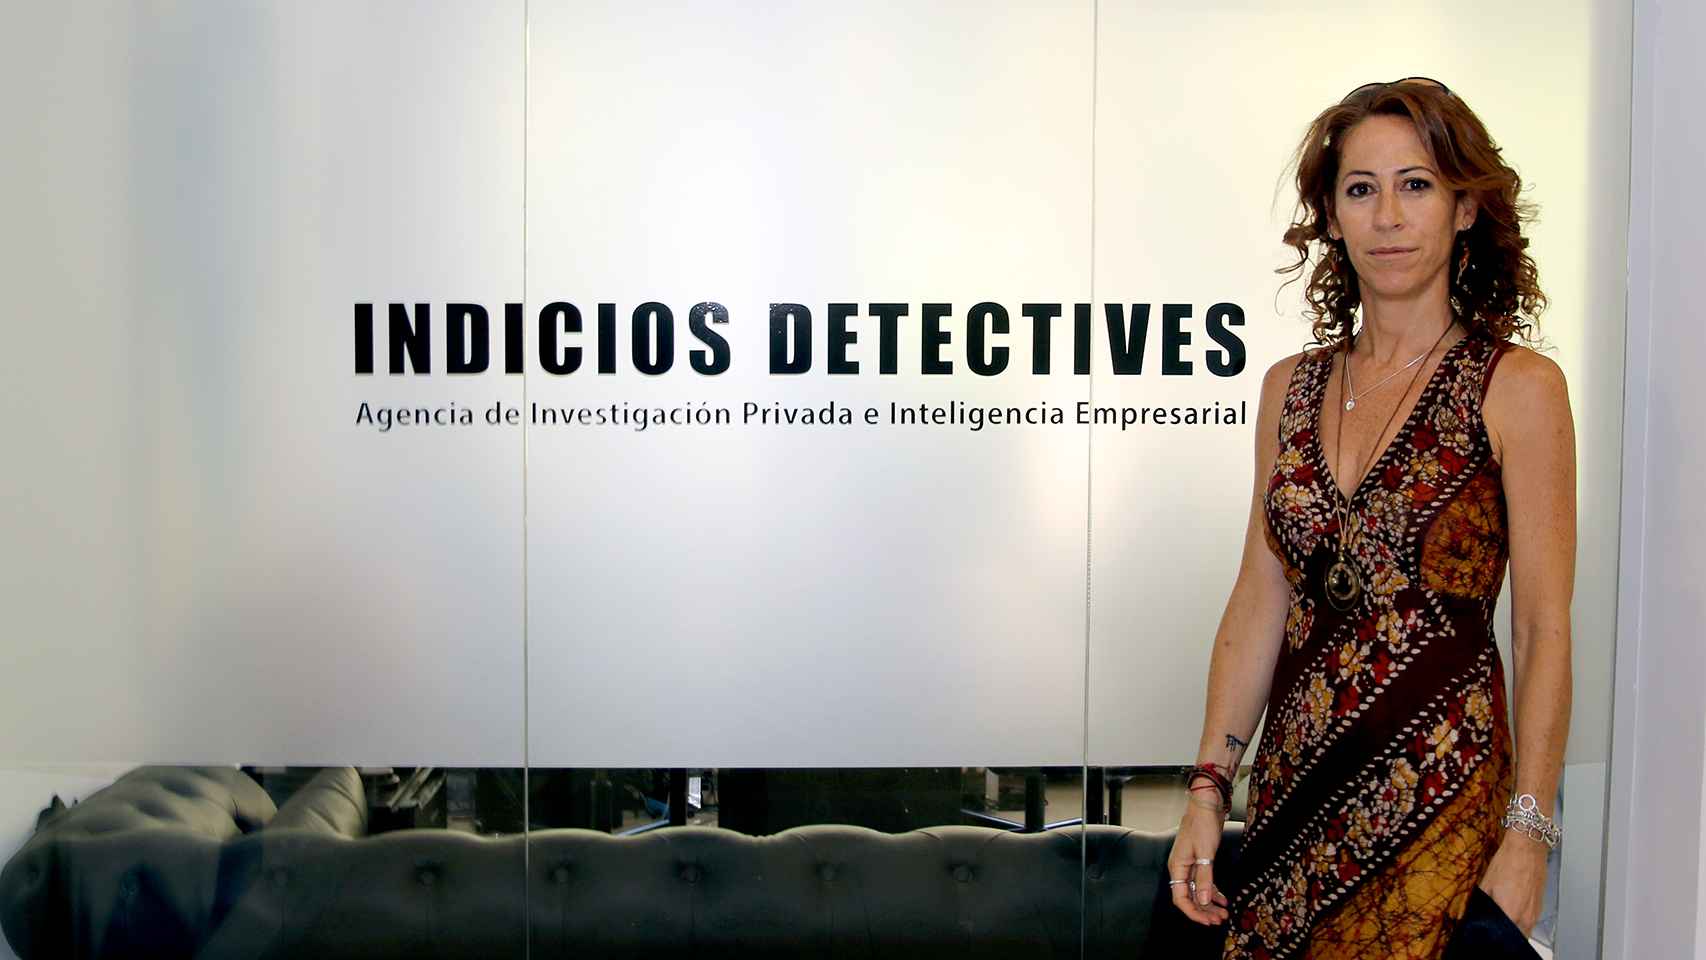 Alicia Lerma es la directora de la agencia de detectives privados Indicios.